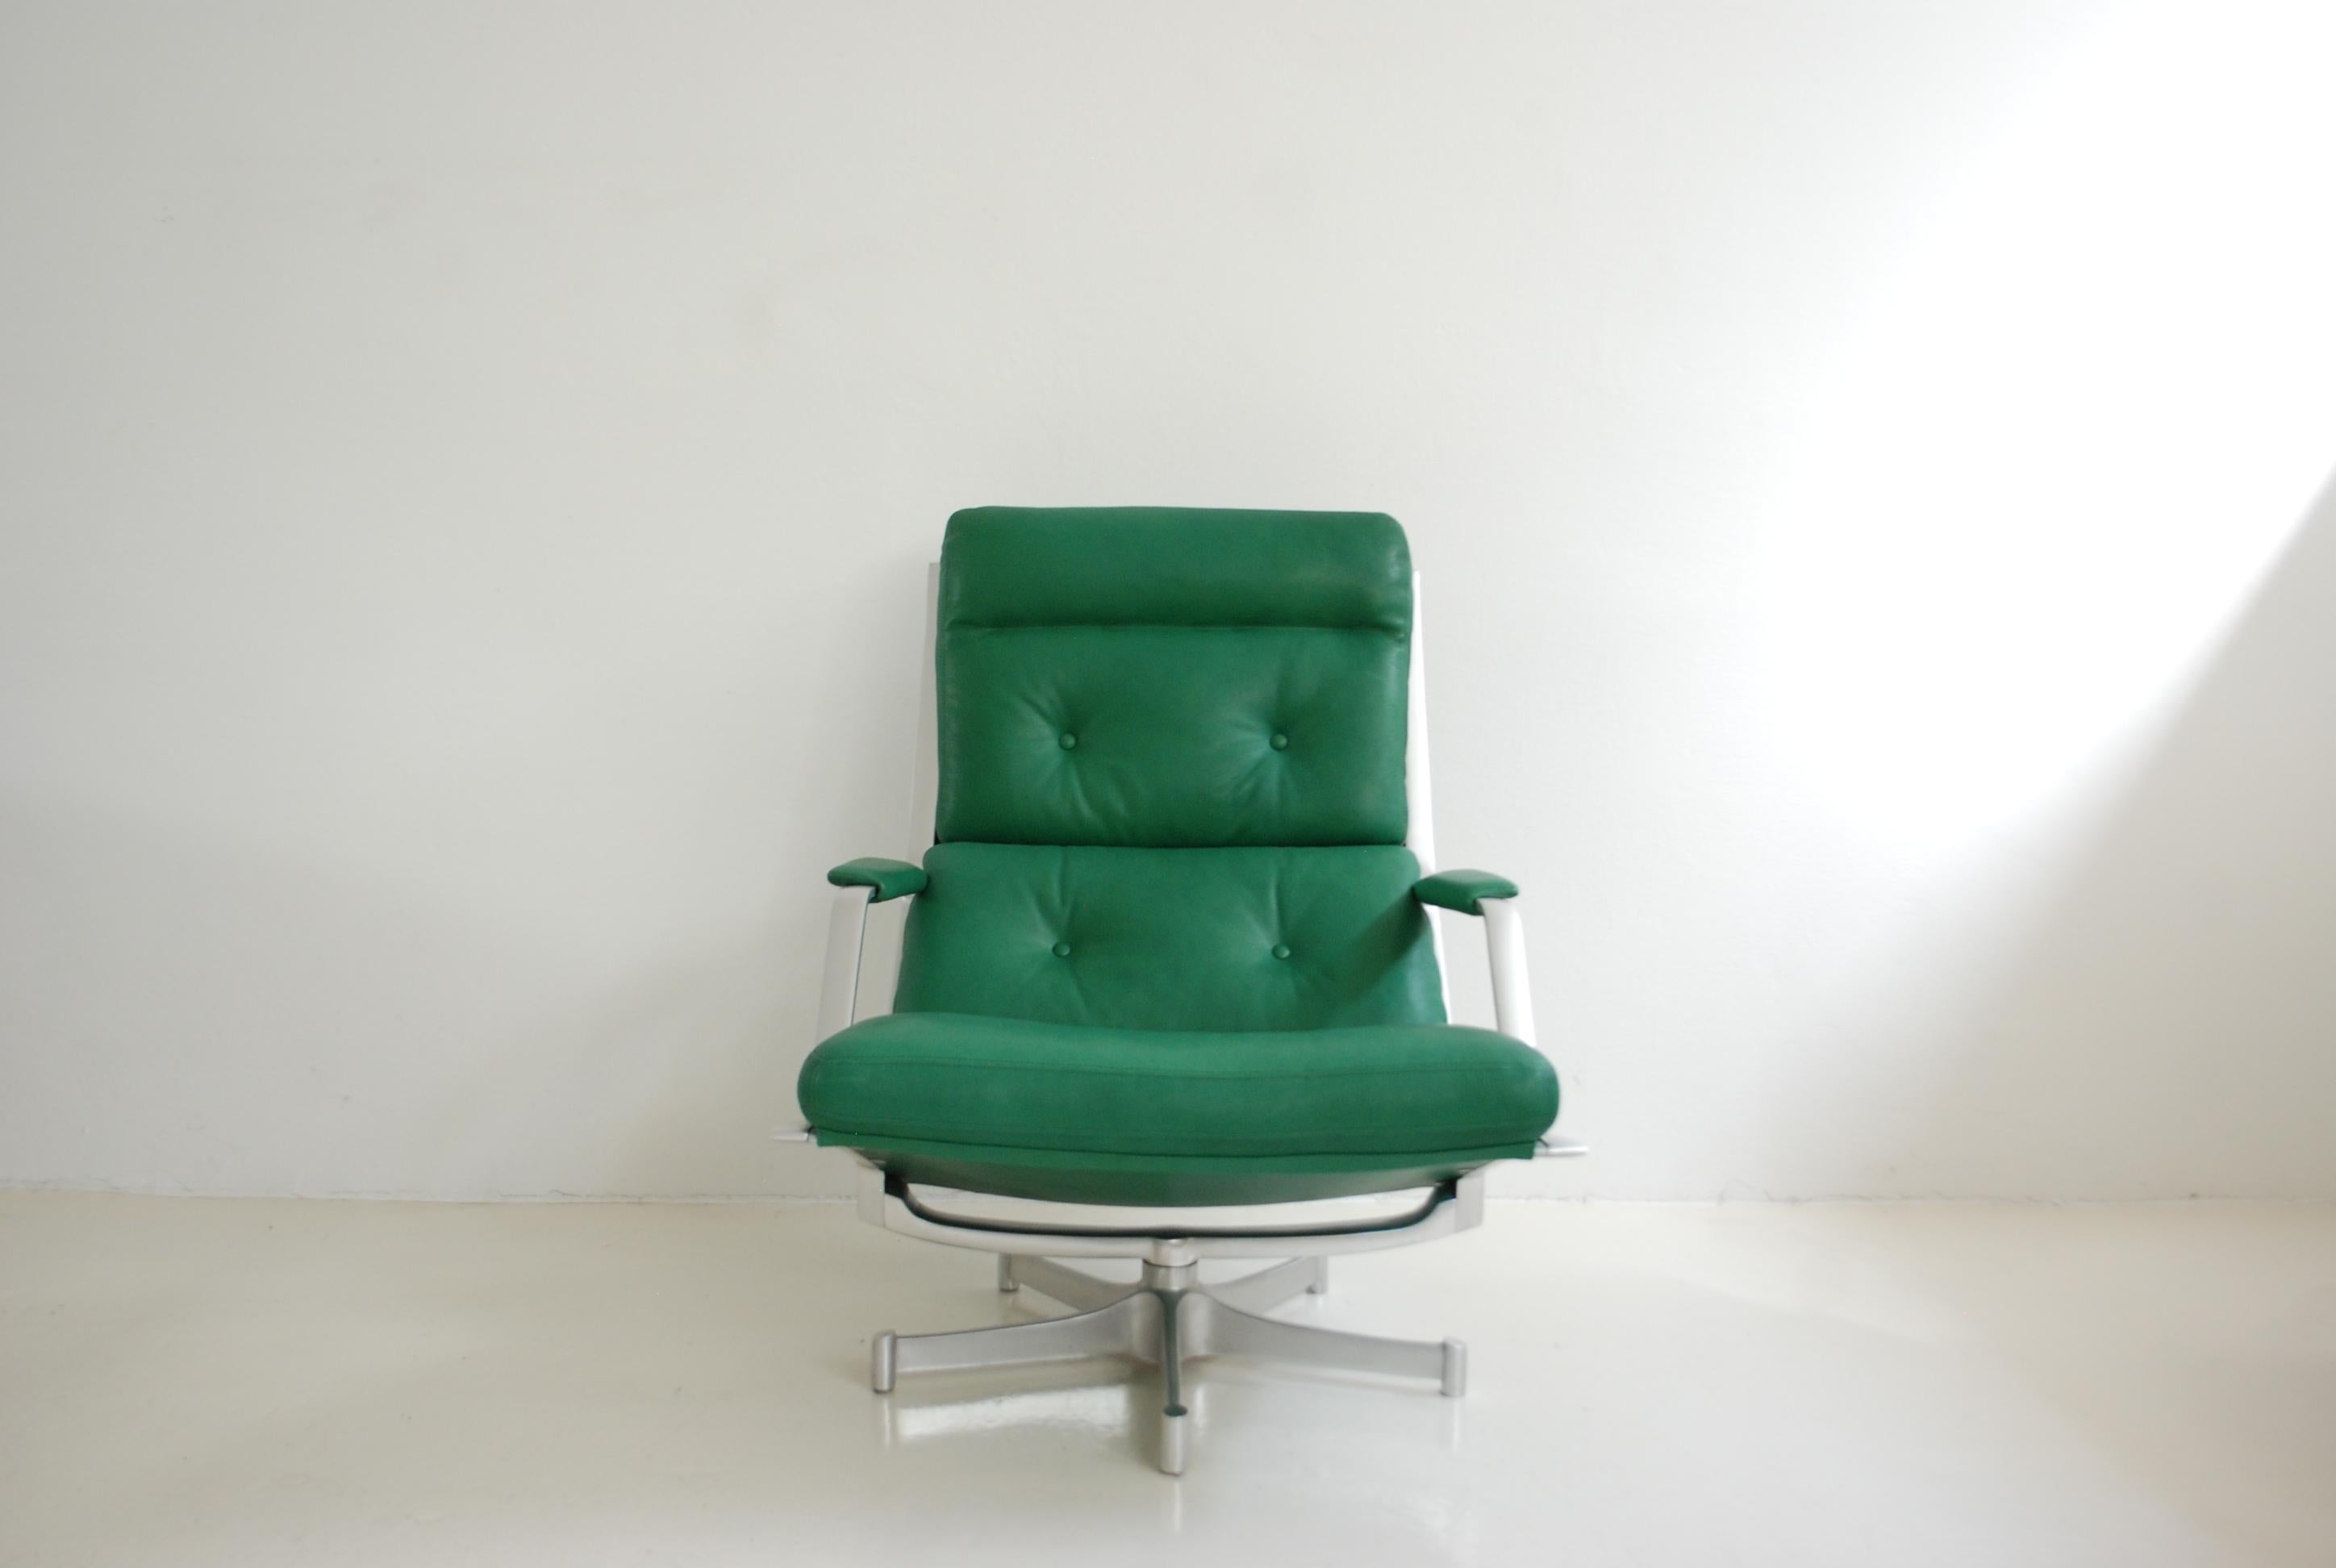 Cette chaise longue FK 85 a été réalisée par Jorgen Kastholm & Preben Fabricius pour Kill international.
Le fauteuil de salon est doté d'une structure en aluminium pivotante et  Cuir vert kelly.
Elle était nouvellement tapissée de cuir aniline de